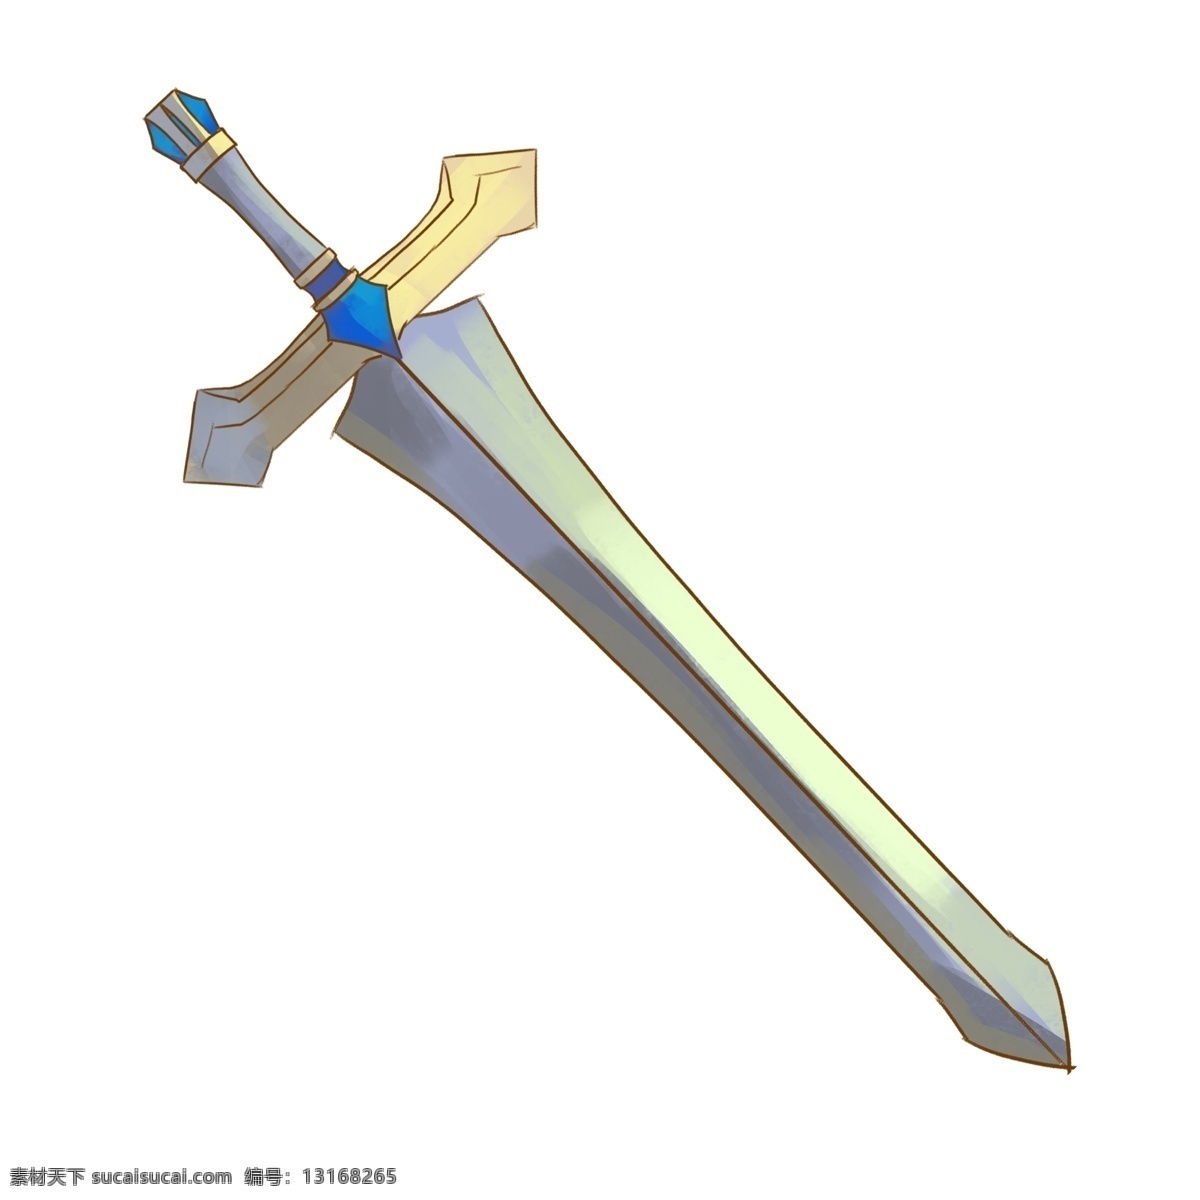 精美 长剑 装饰 插画 精美长剑 锋利的长剑 漂亮的长剑 创意长剑 立体长剑 古风长剑 武士长剑